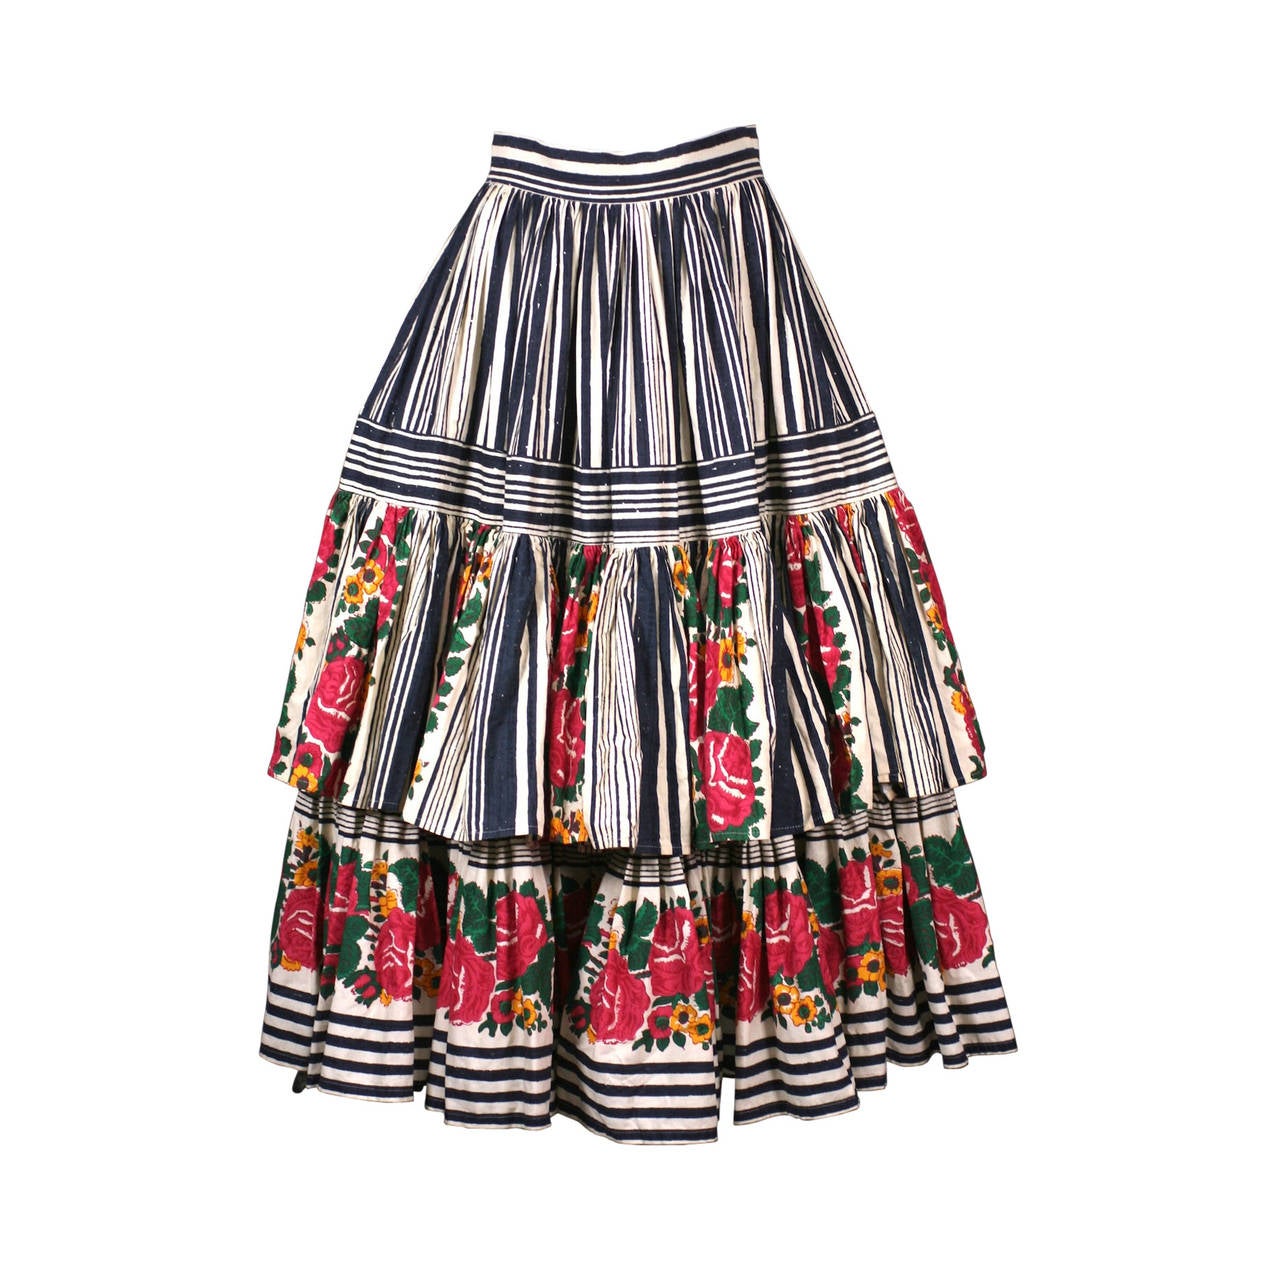 Ruffled Provencal Print Skirt